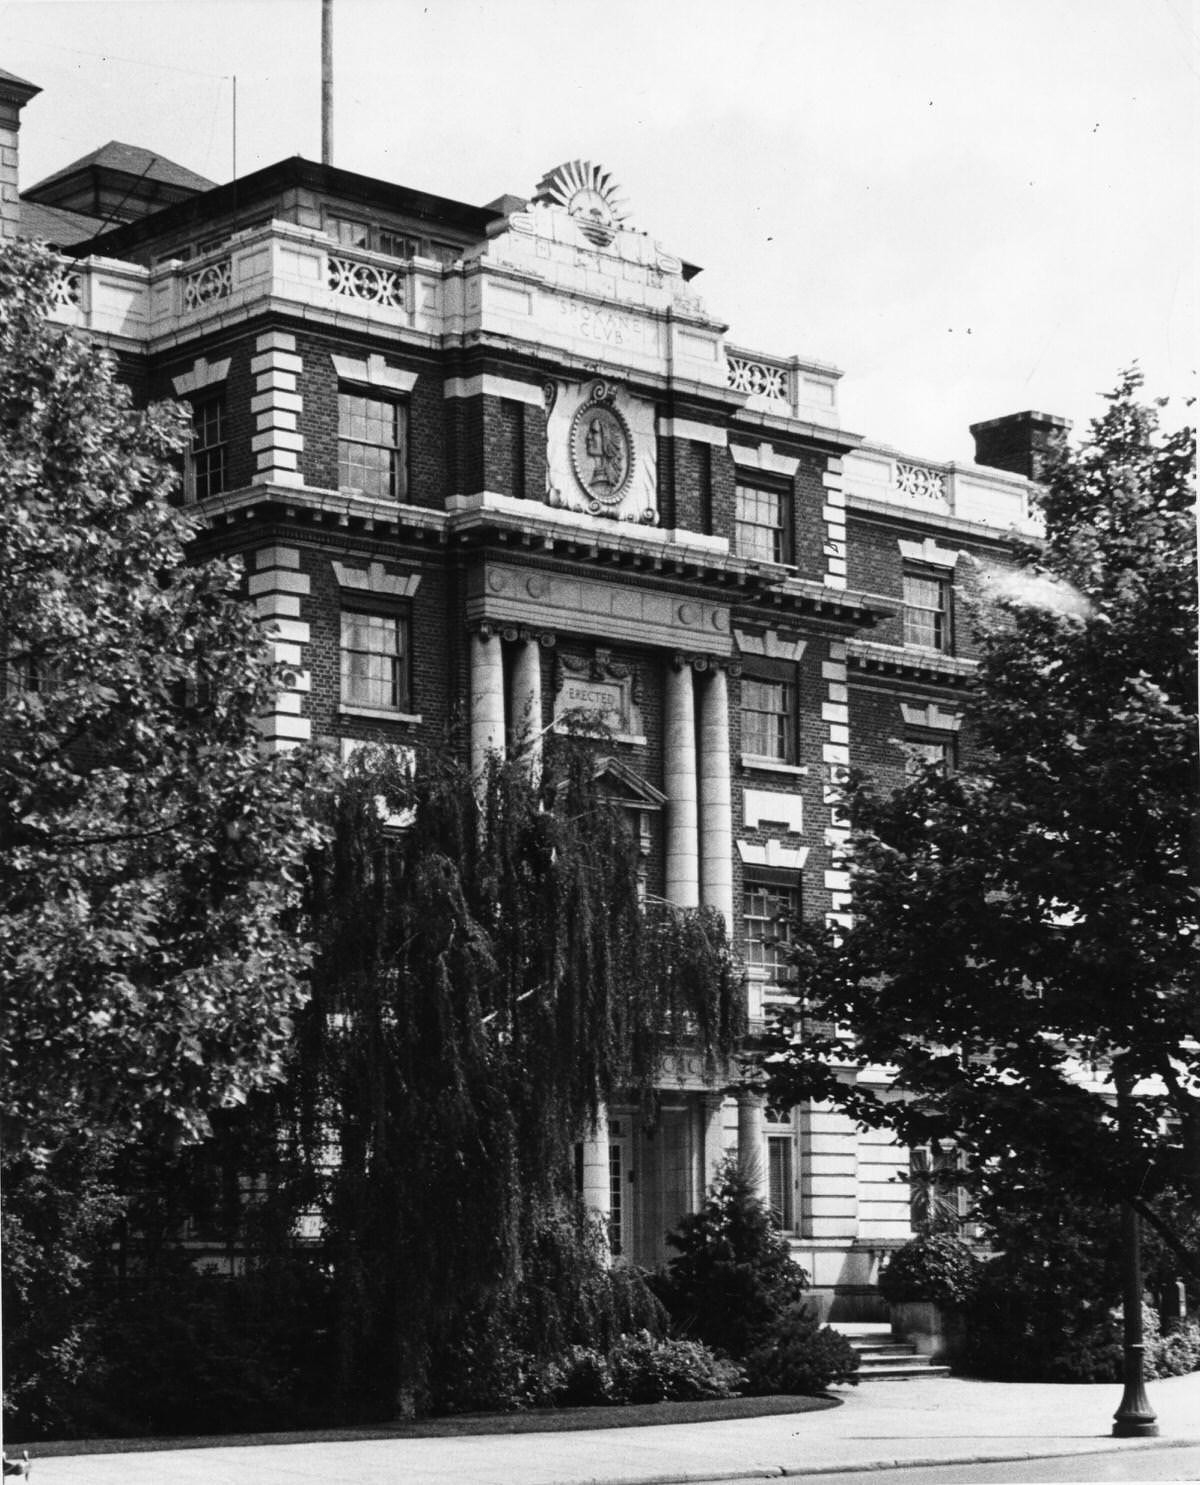 Spokane Club, 1940s